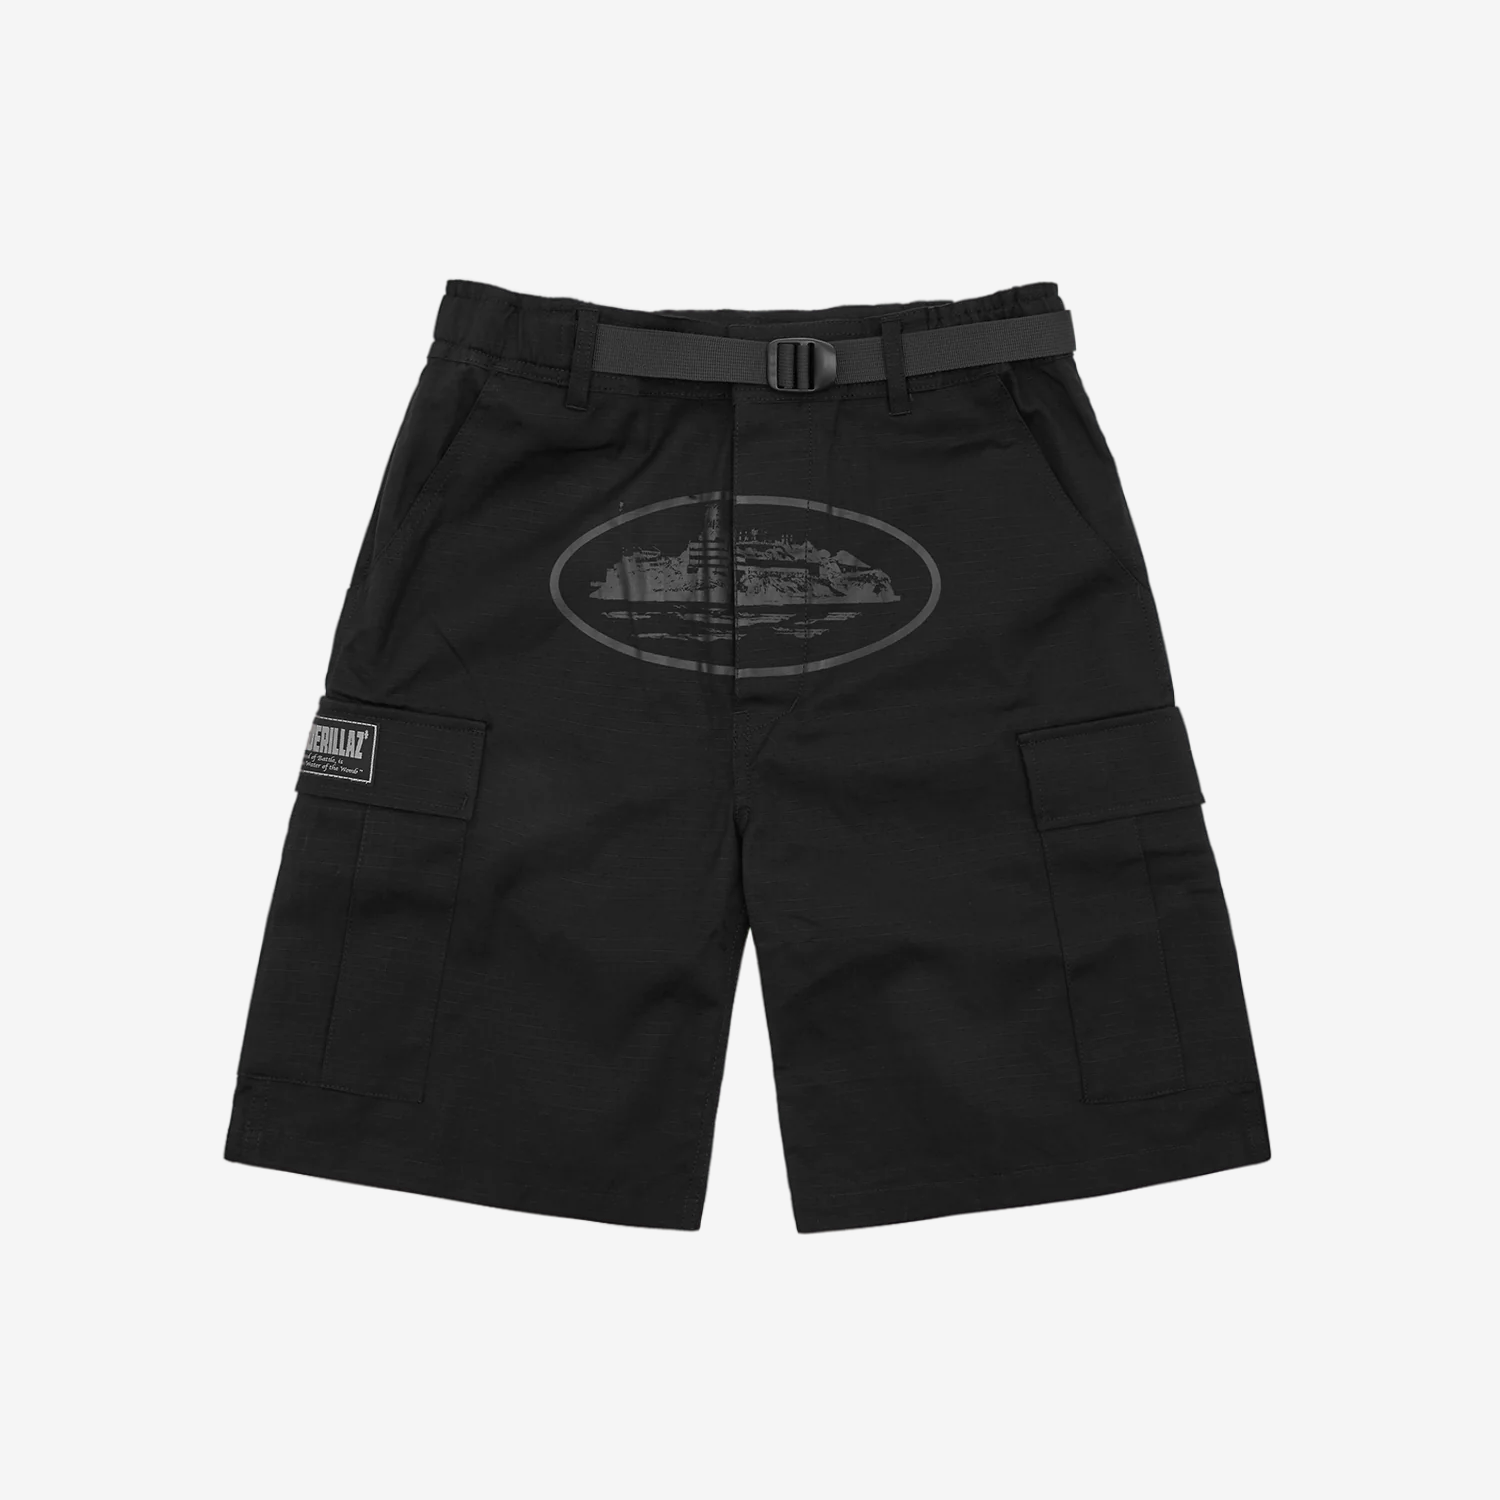 Blackout OG Cargos shorts